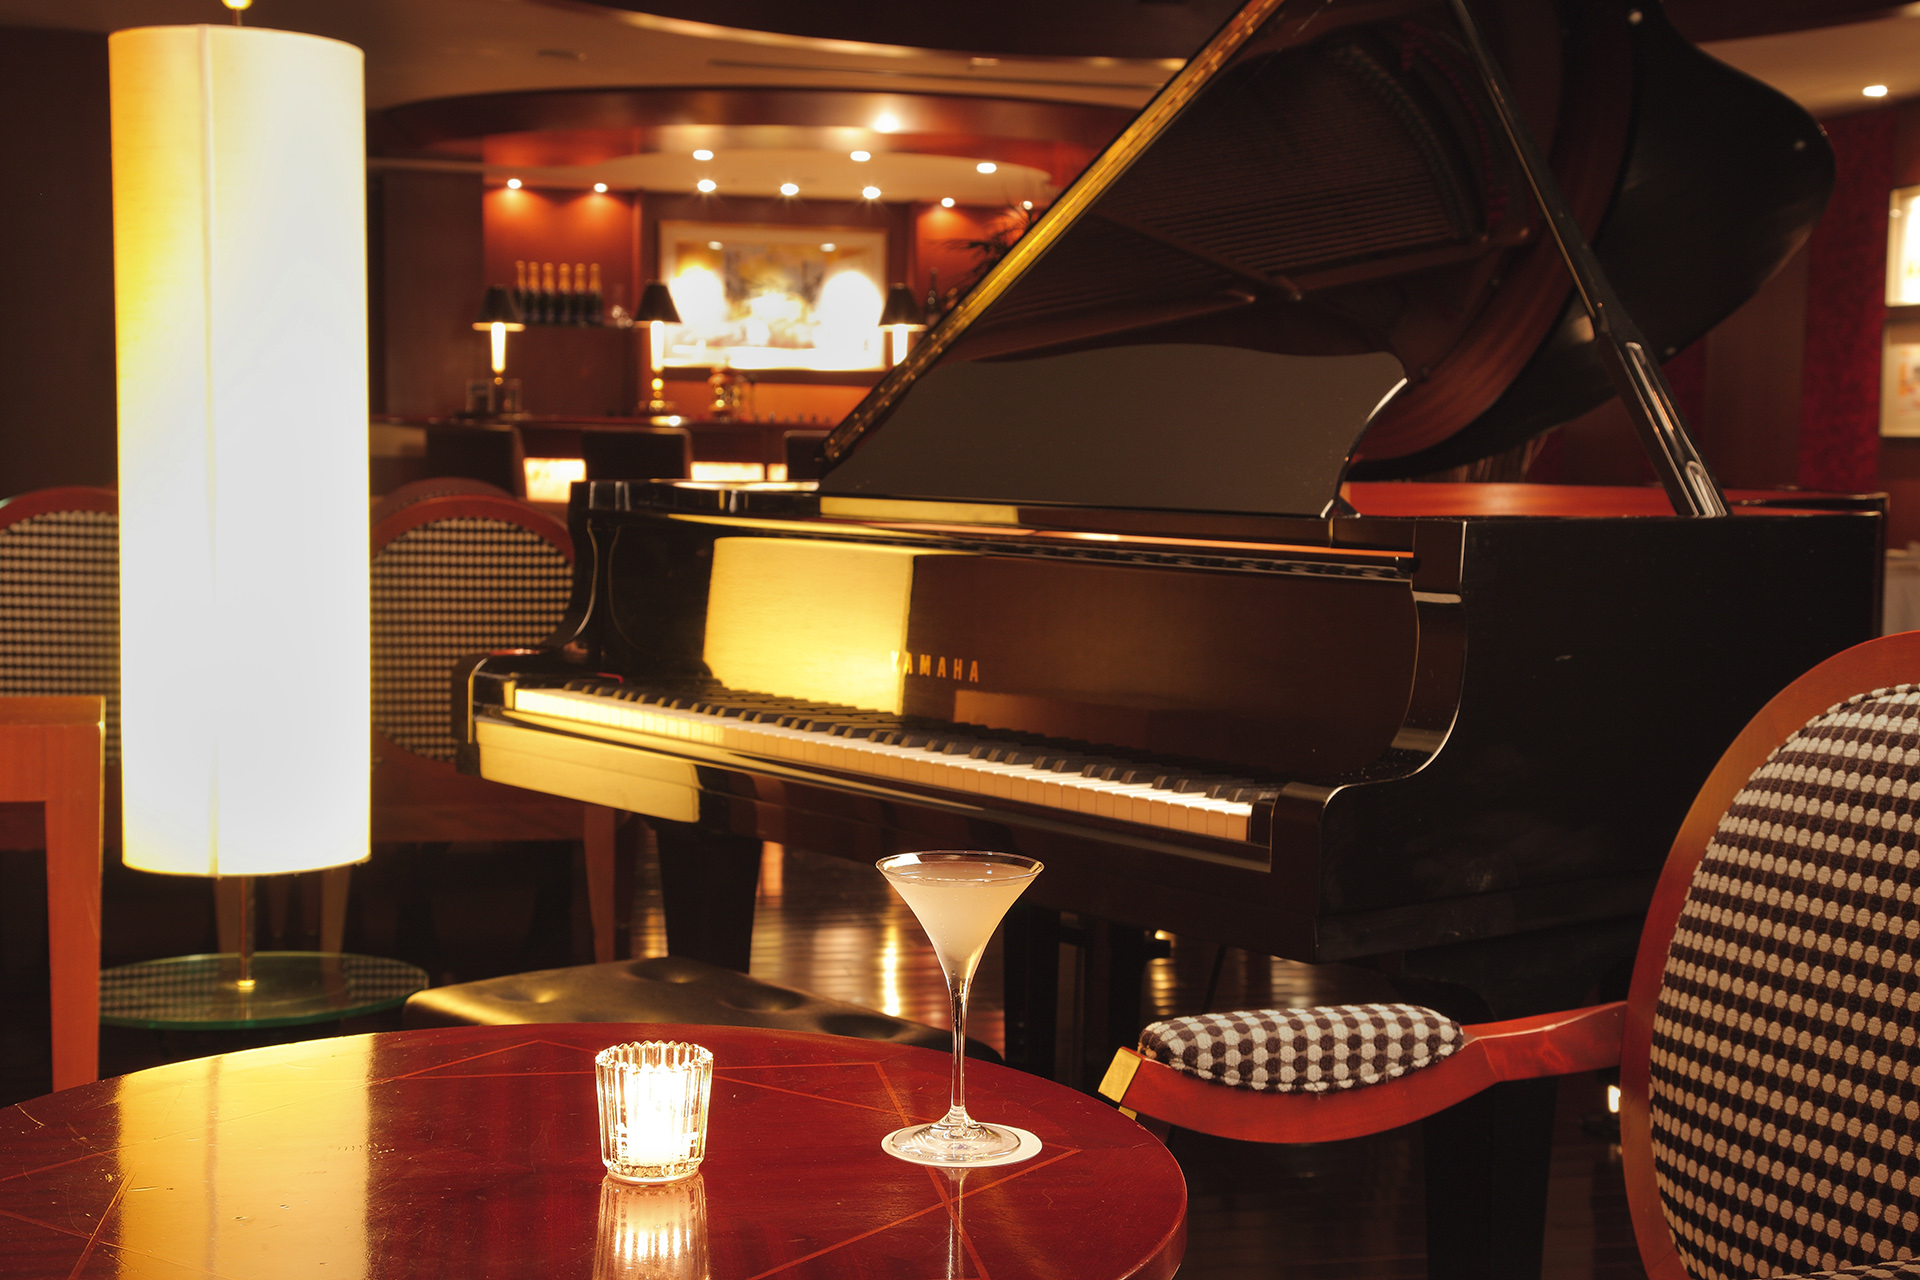 Piano and Cocktail at Marina Bar